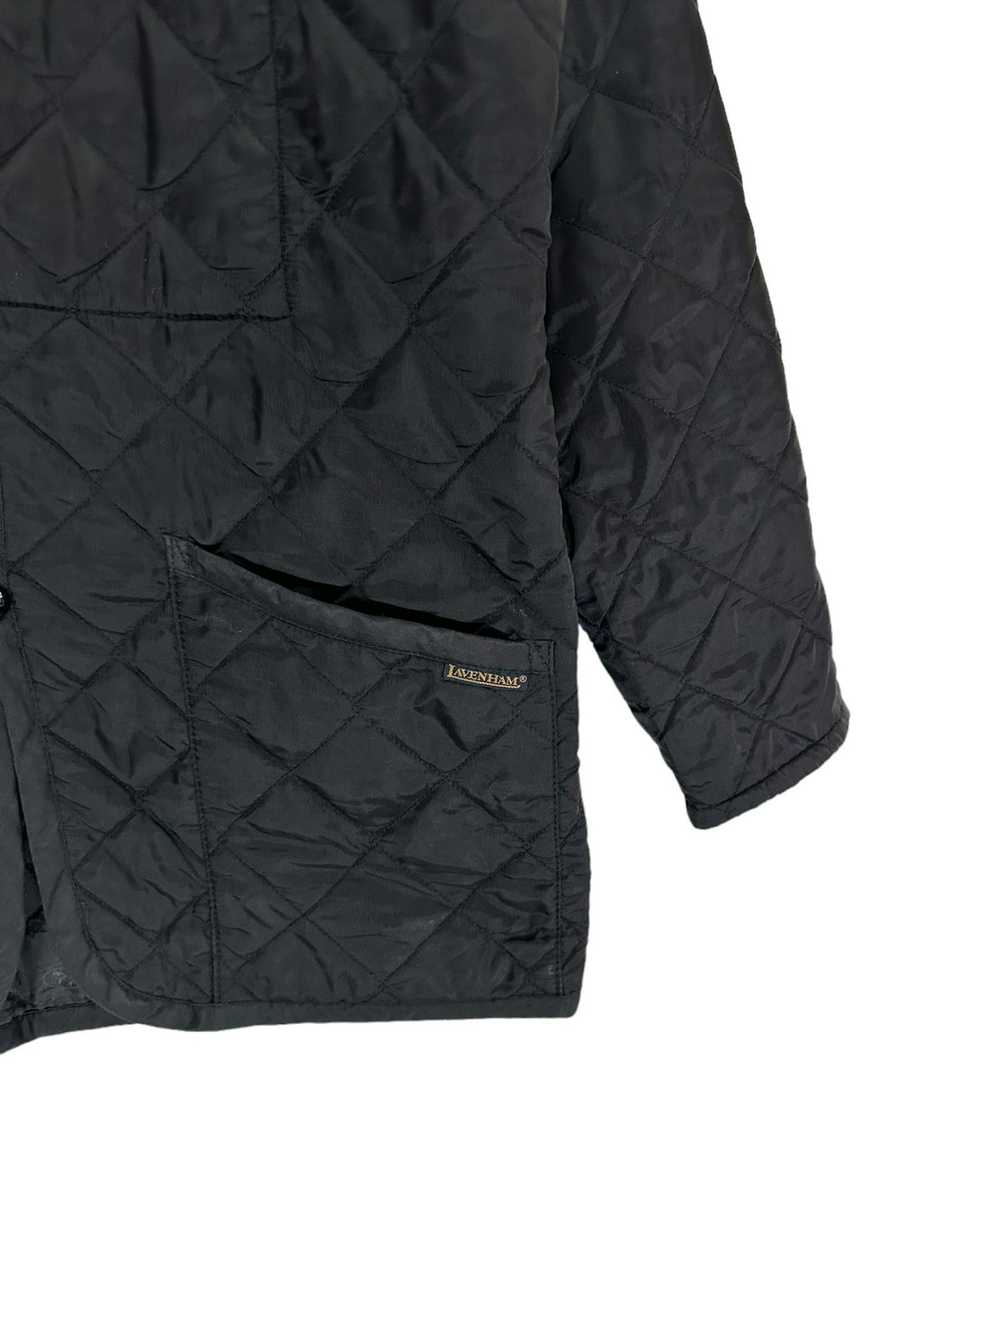 Lavenham Lavenham quilted jacket - image 5